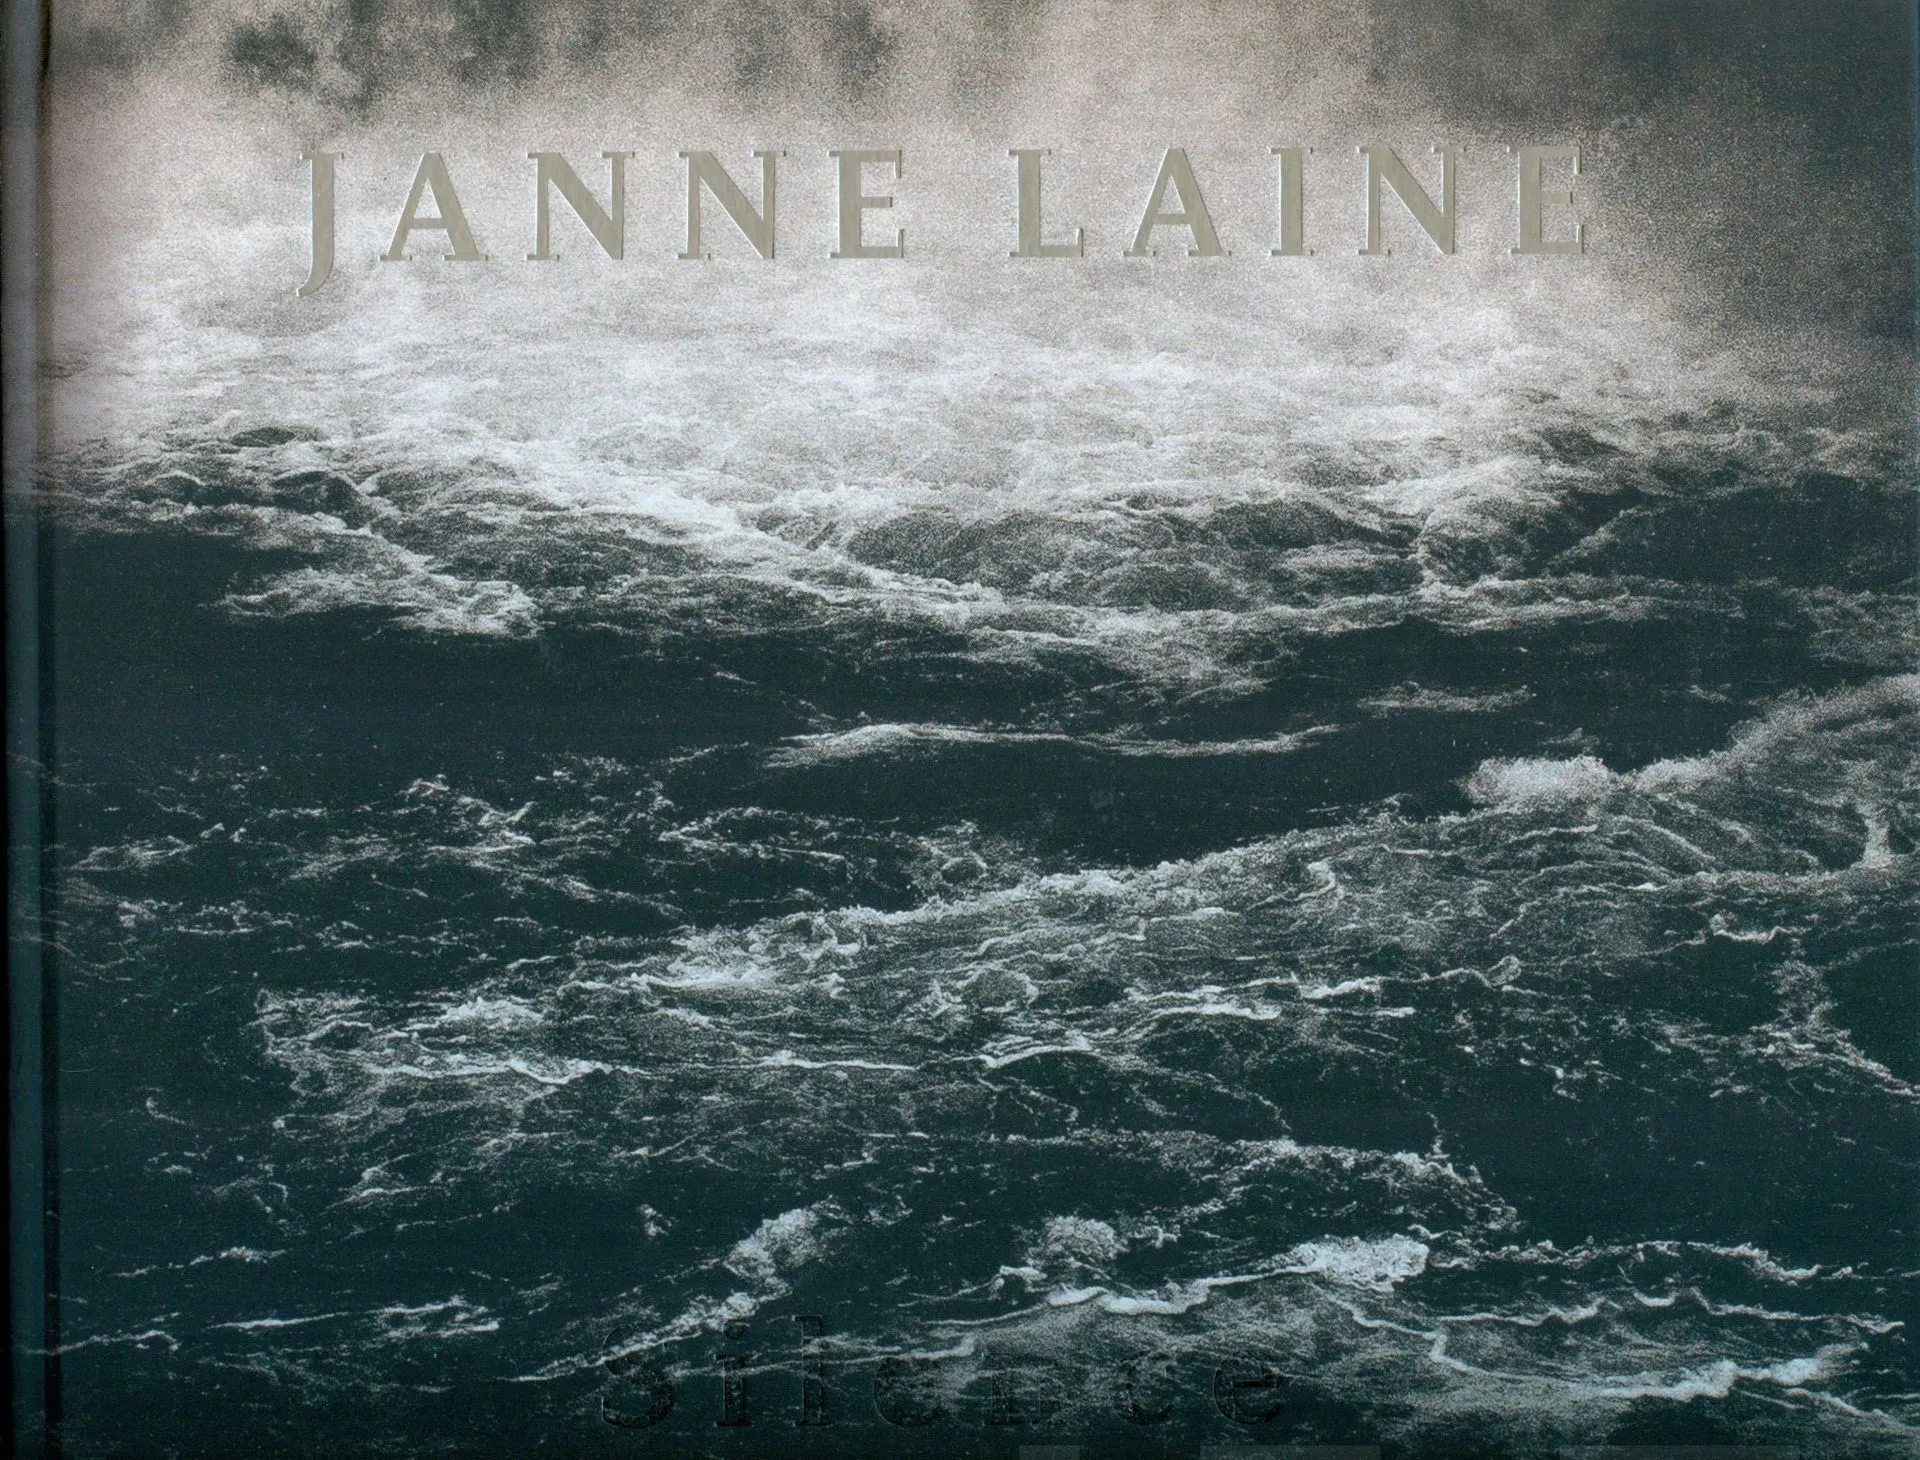 Halmetoja, Janne Laine - Silence